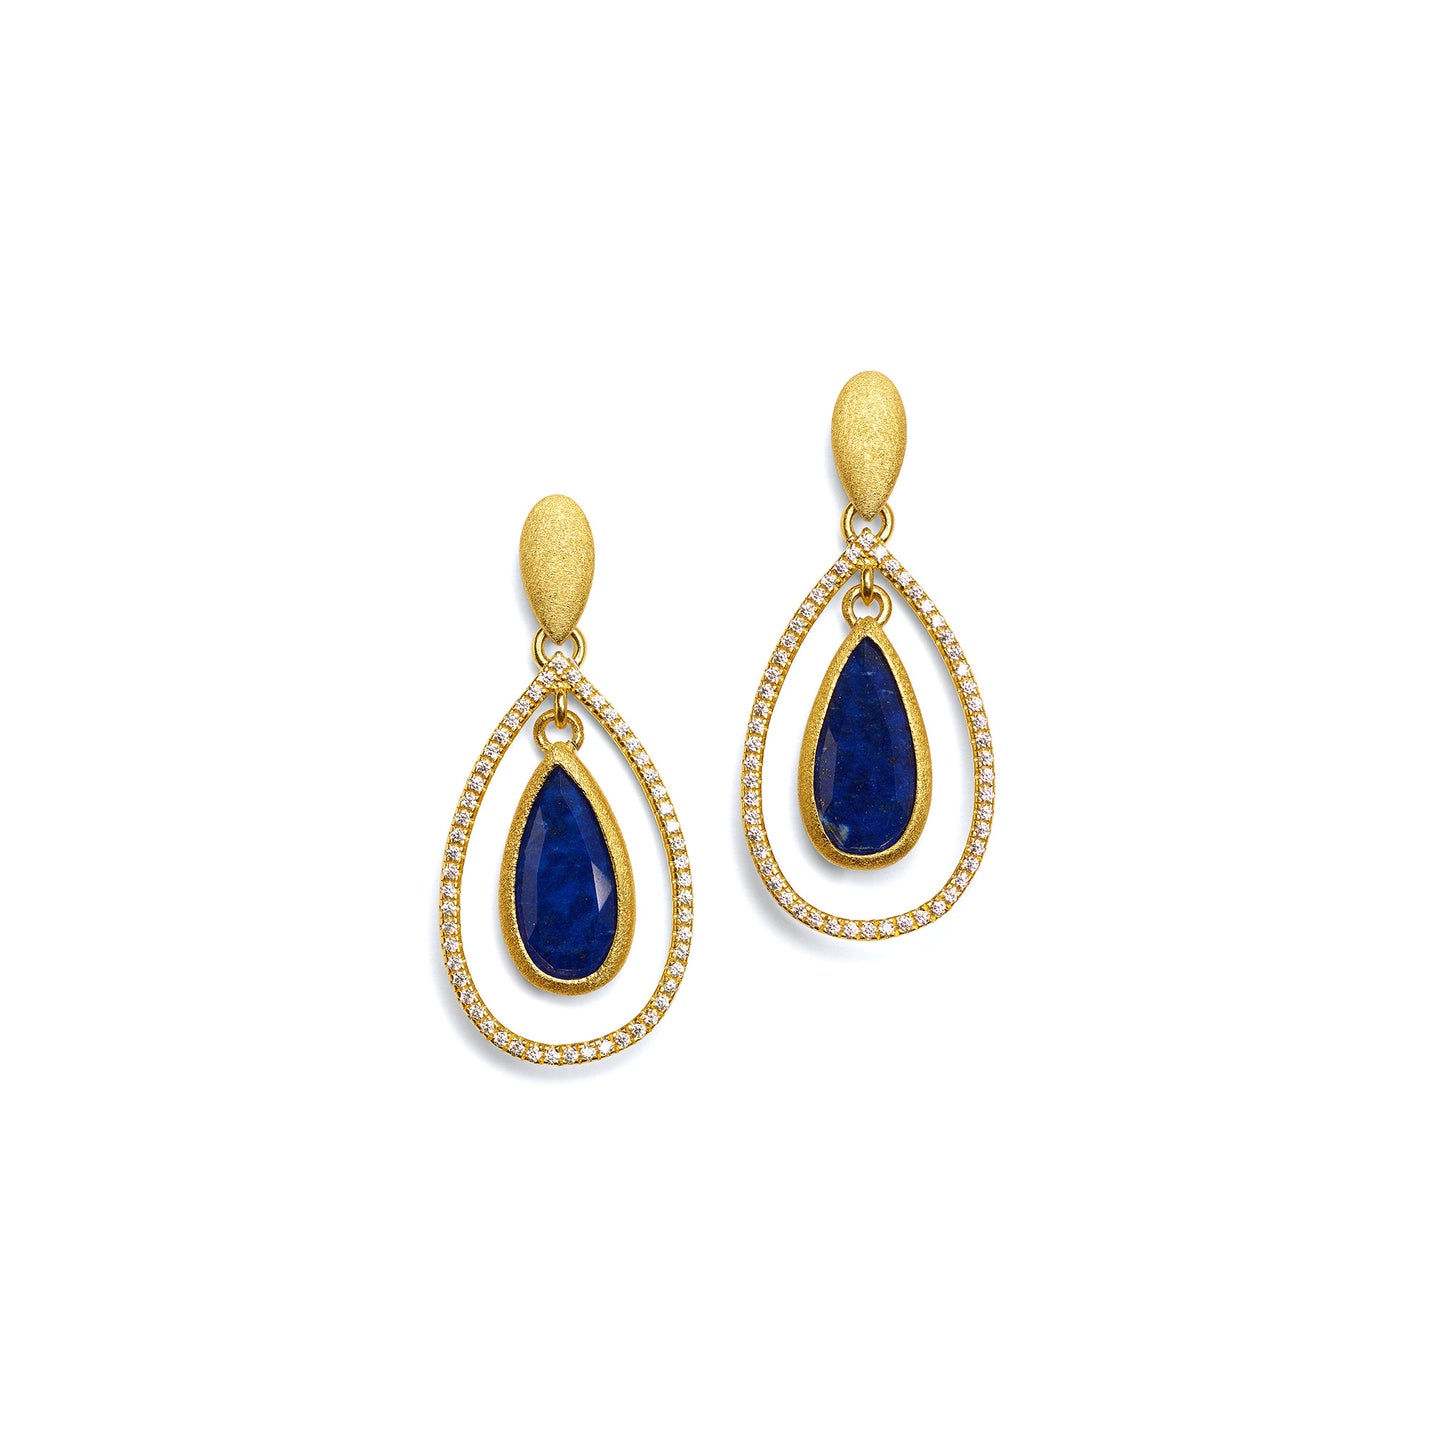 Bernd Wolf Collection "Venezia" Blue Lapis Earrings (Sm)